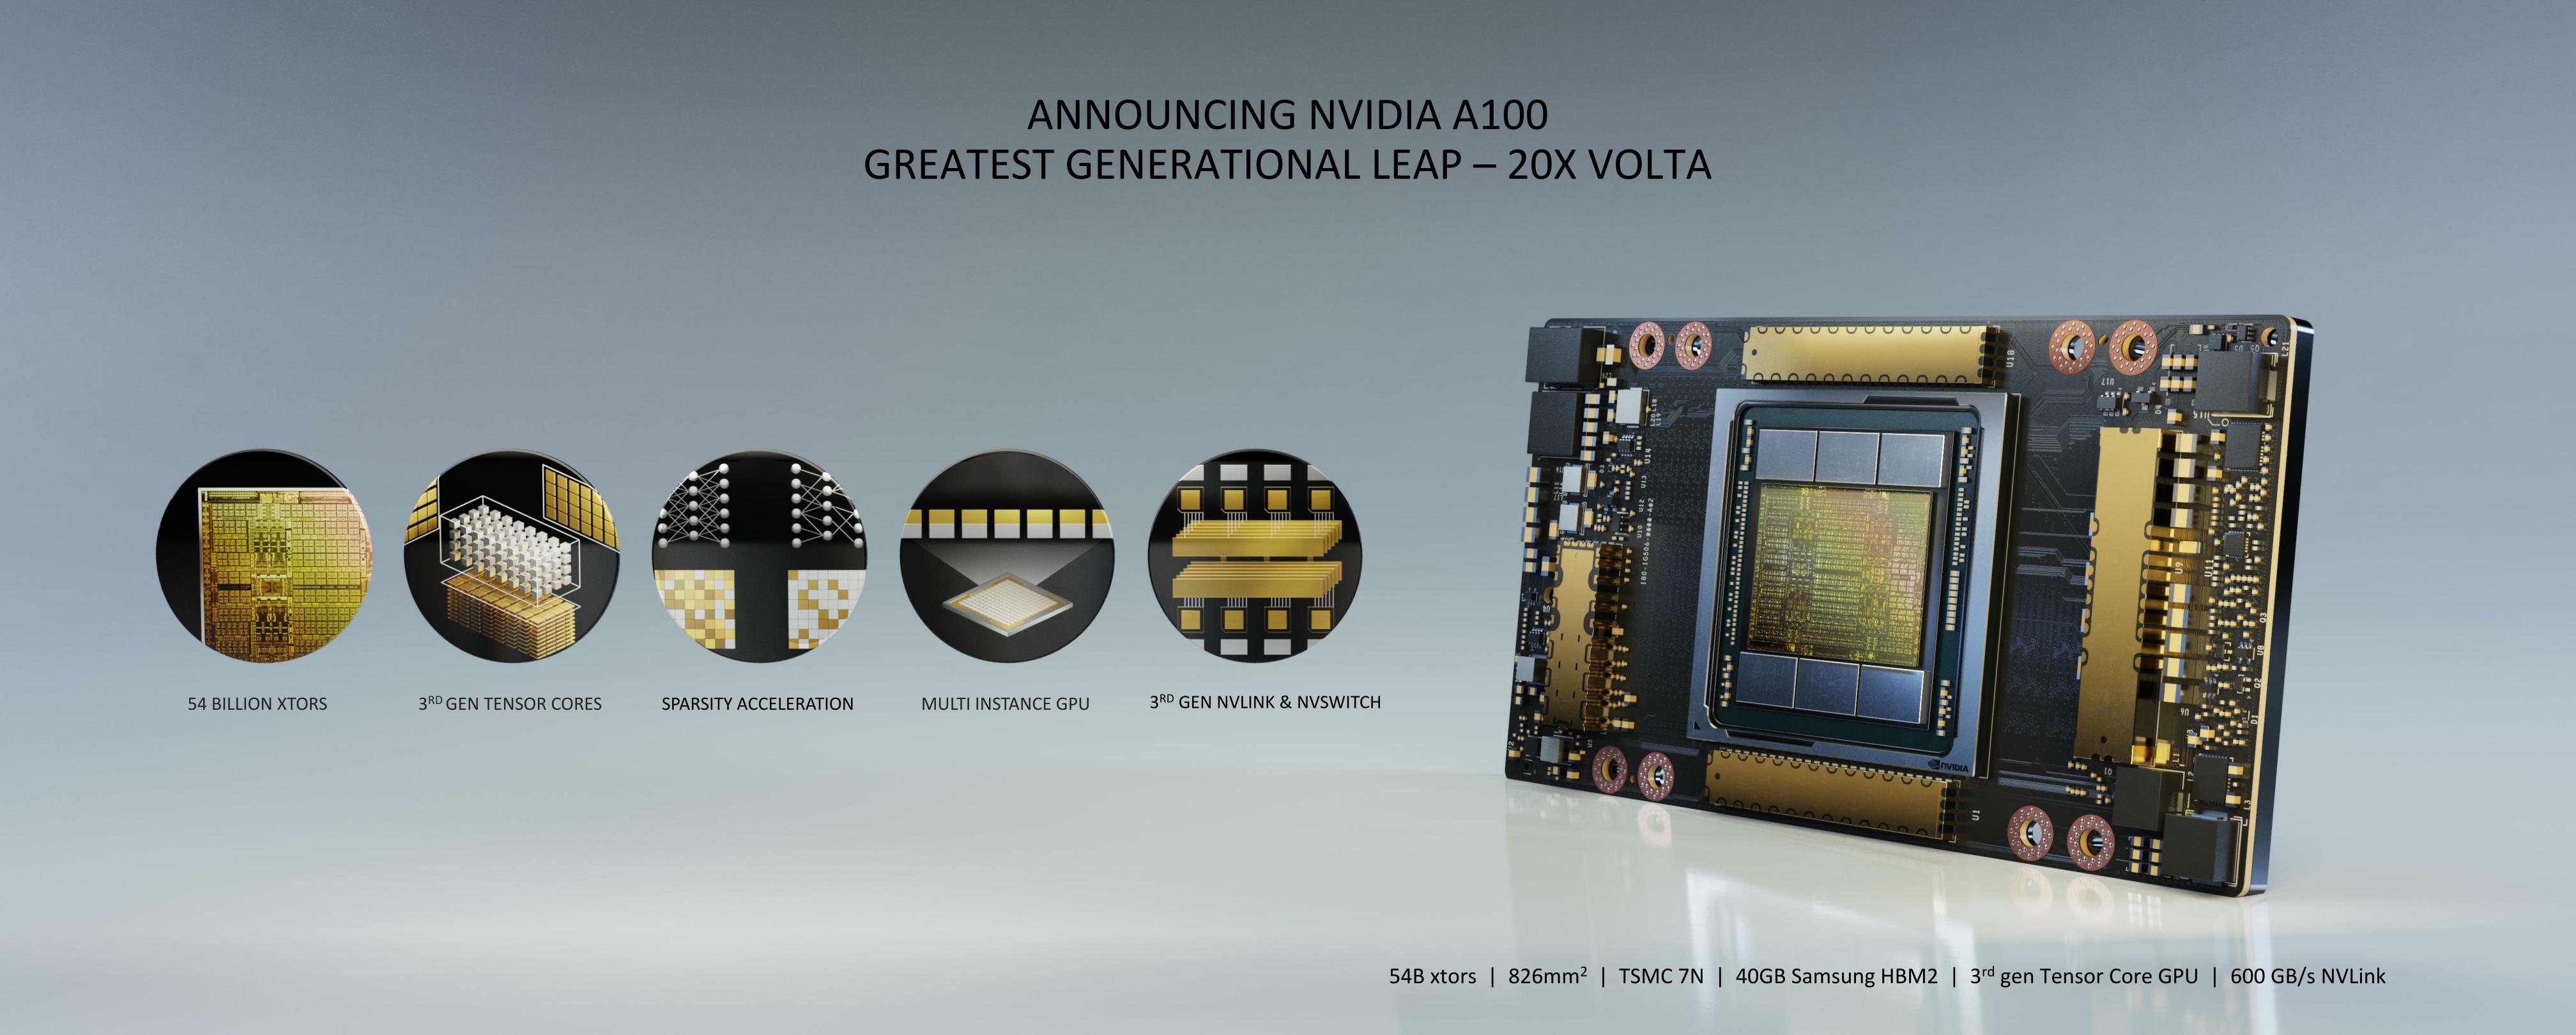 NVIDIA Unleashed: NVIDIA New GPU Architecture, A100 GPU, and Accelerator